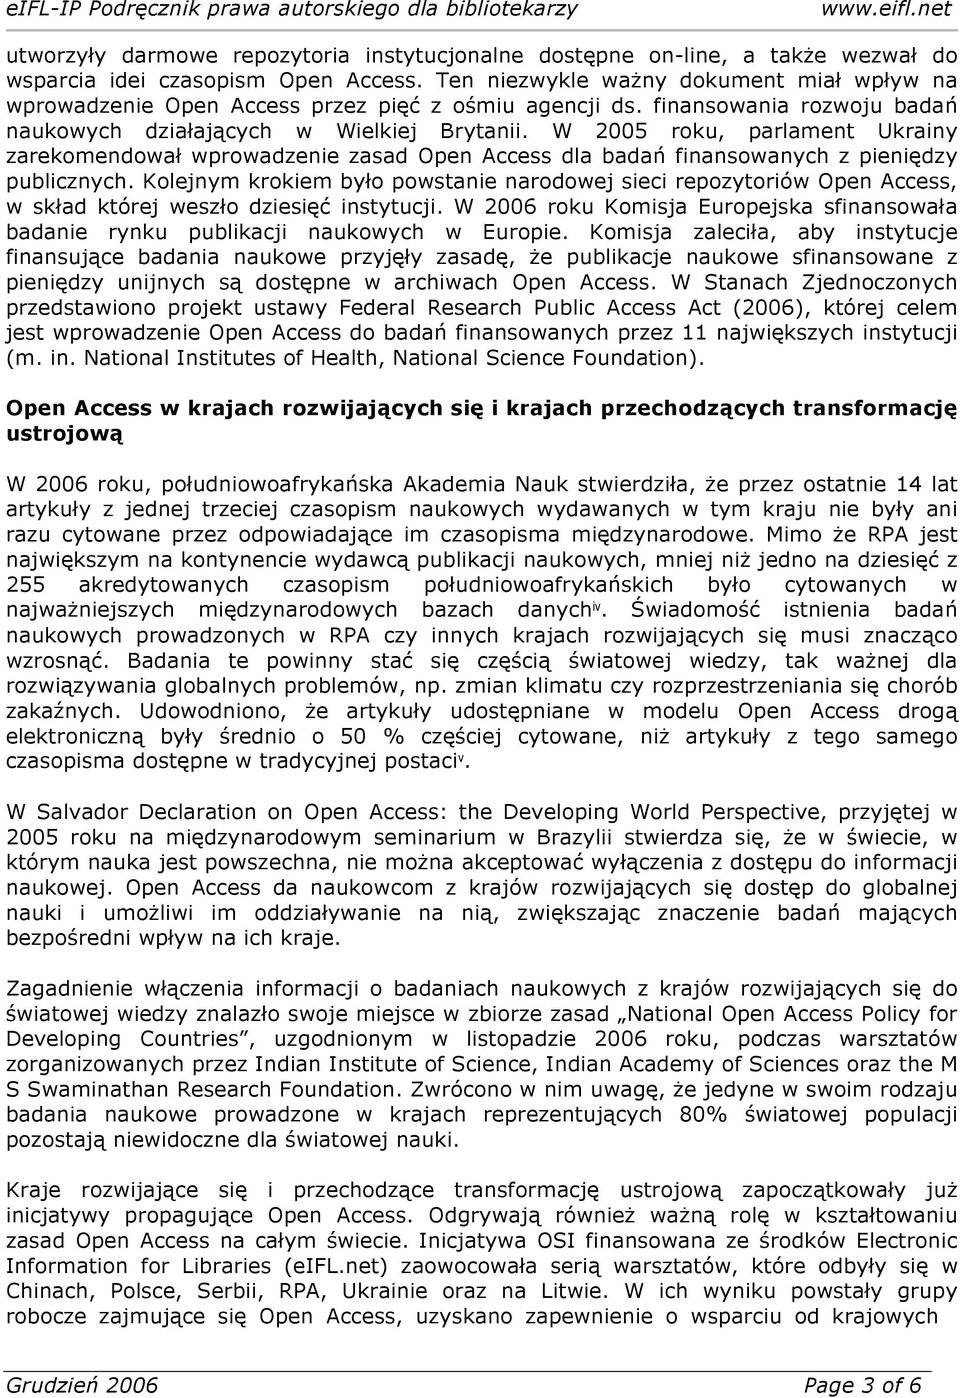 W 2005 roku, parlament Ukrainy zarekomendował wprowadzenie zasad Open Access dla badań finansowanych z pieniędzy publicznych.